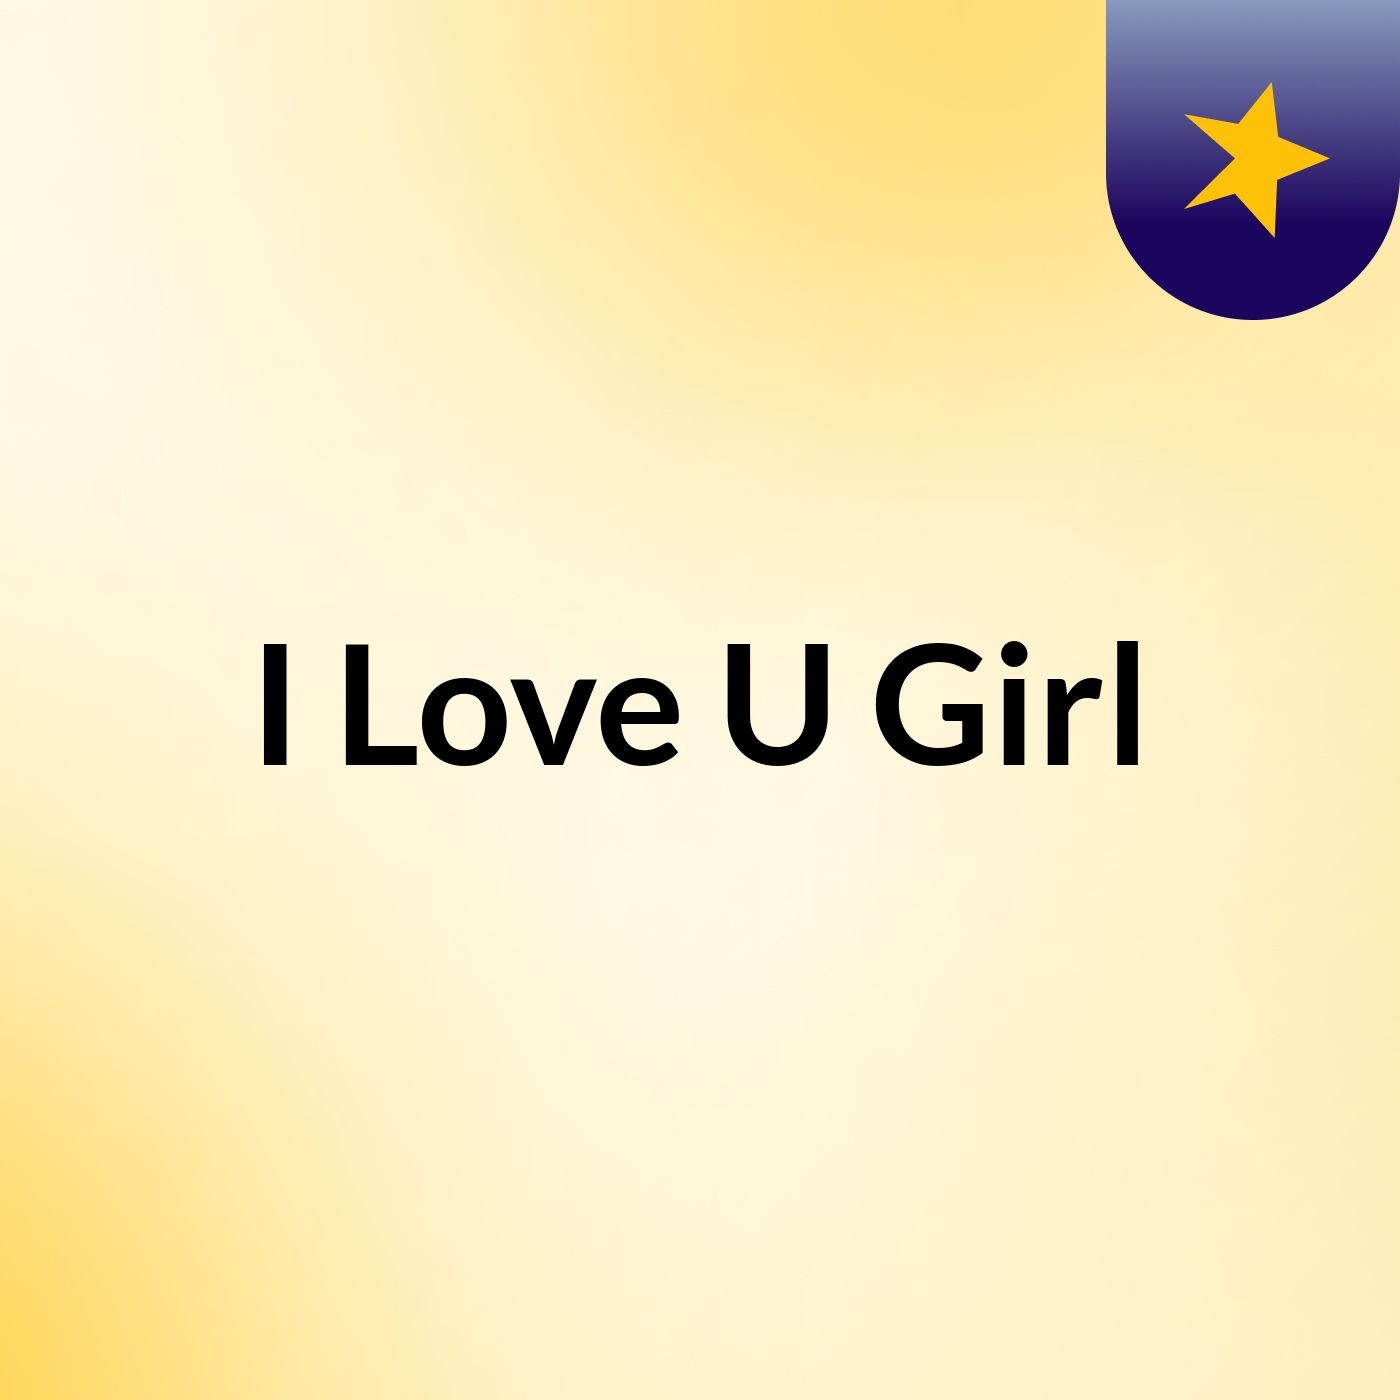 I Love U Girl